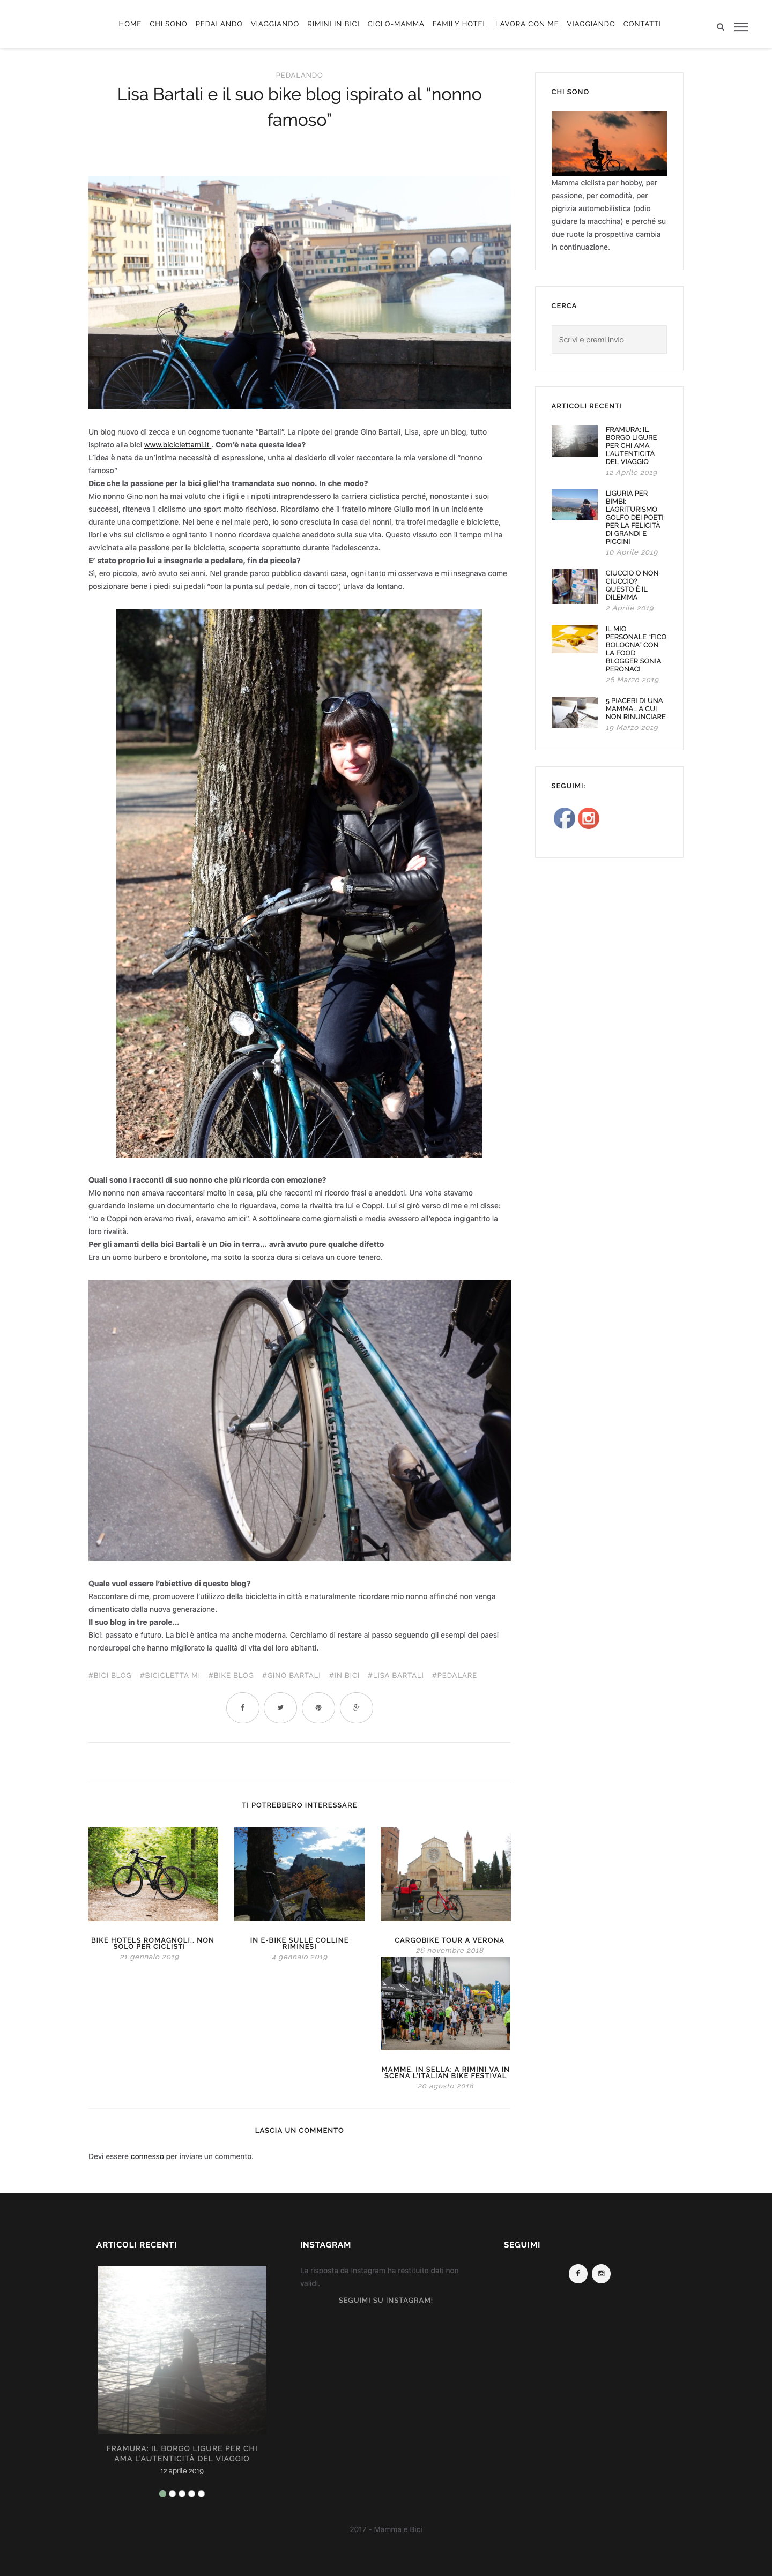 Lisa-Bartali-e-il-suo-bike-blog-ispirato-al-“nonno-famoso”-–-Mamma-e-Bici_-www.mammaebici.it-04-2019  